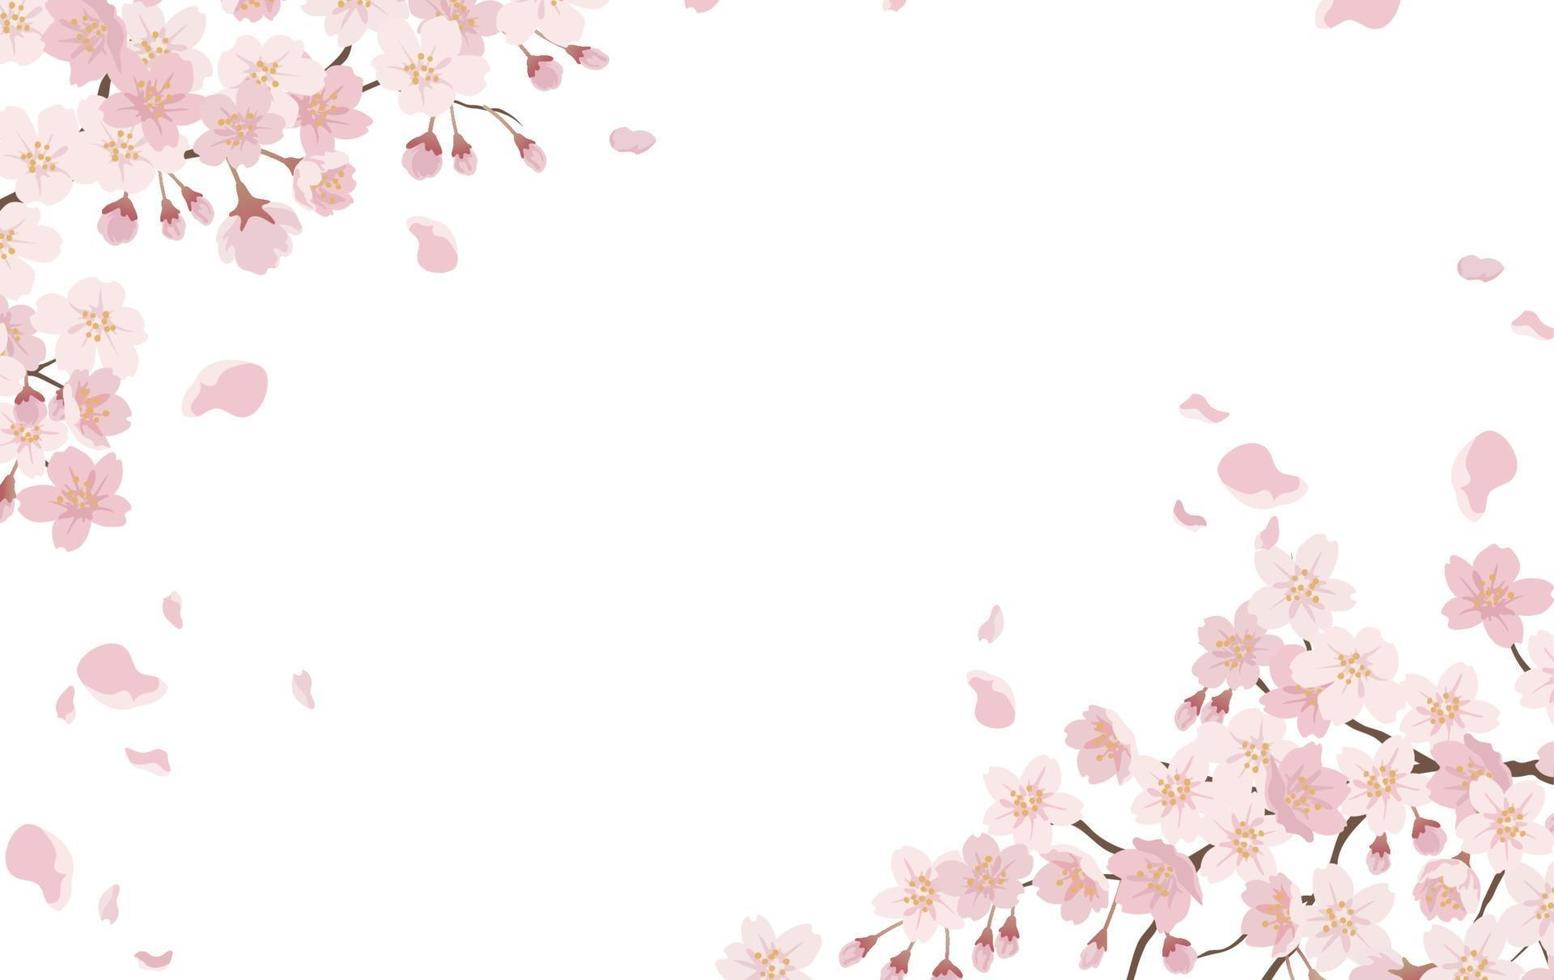 blommig bakgrund med körsbärsblommor i full blom isolerad på en vit bakgrund. vektor